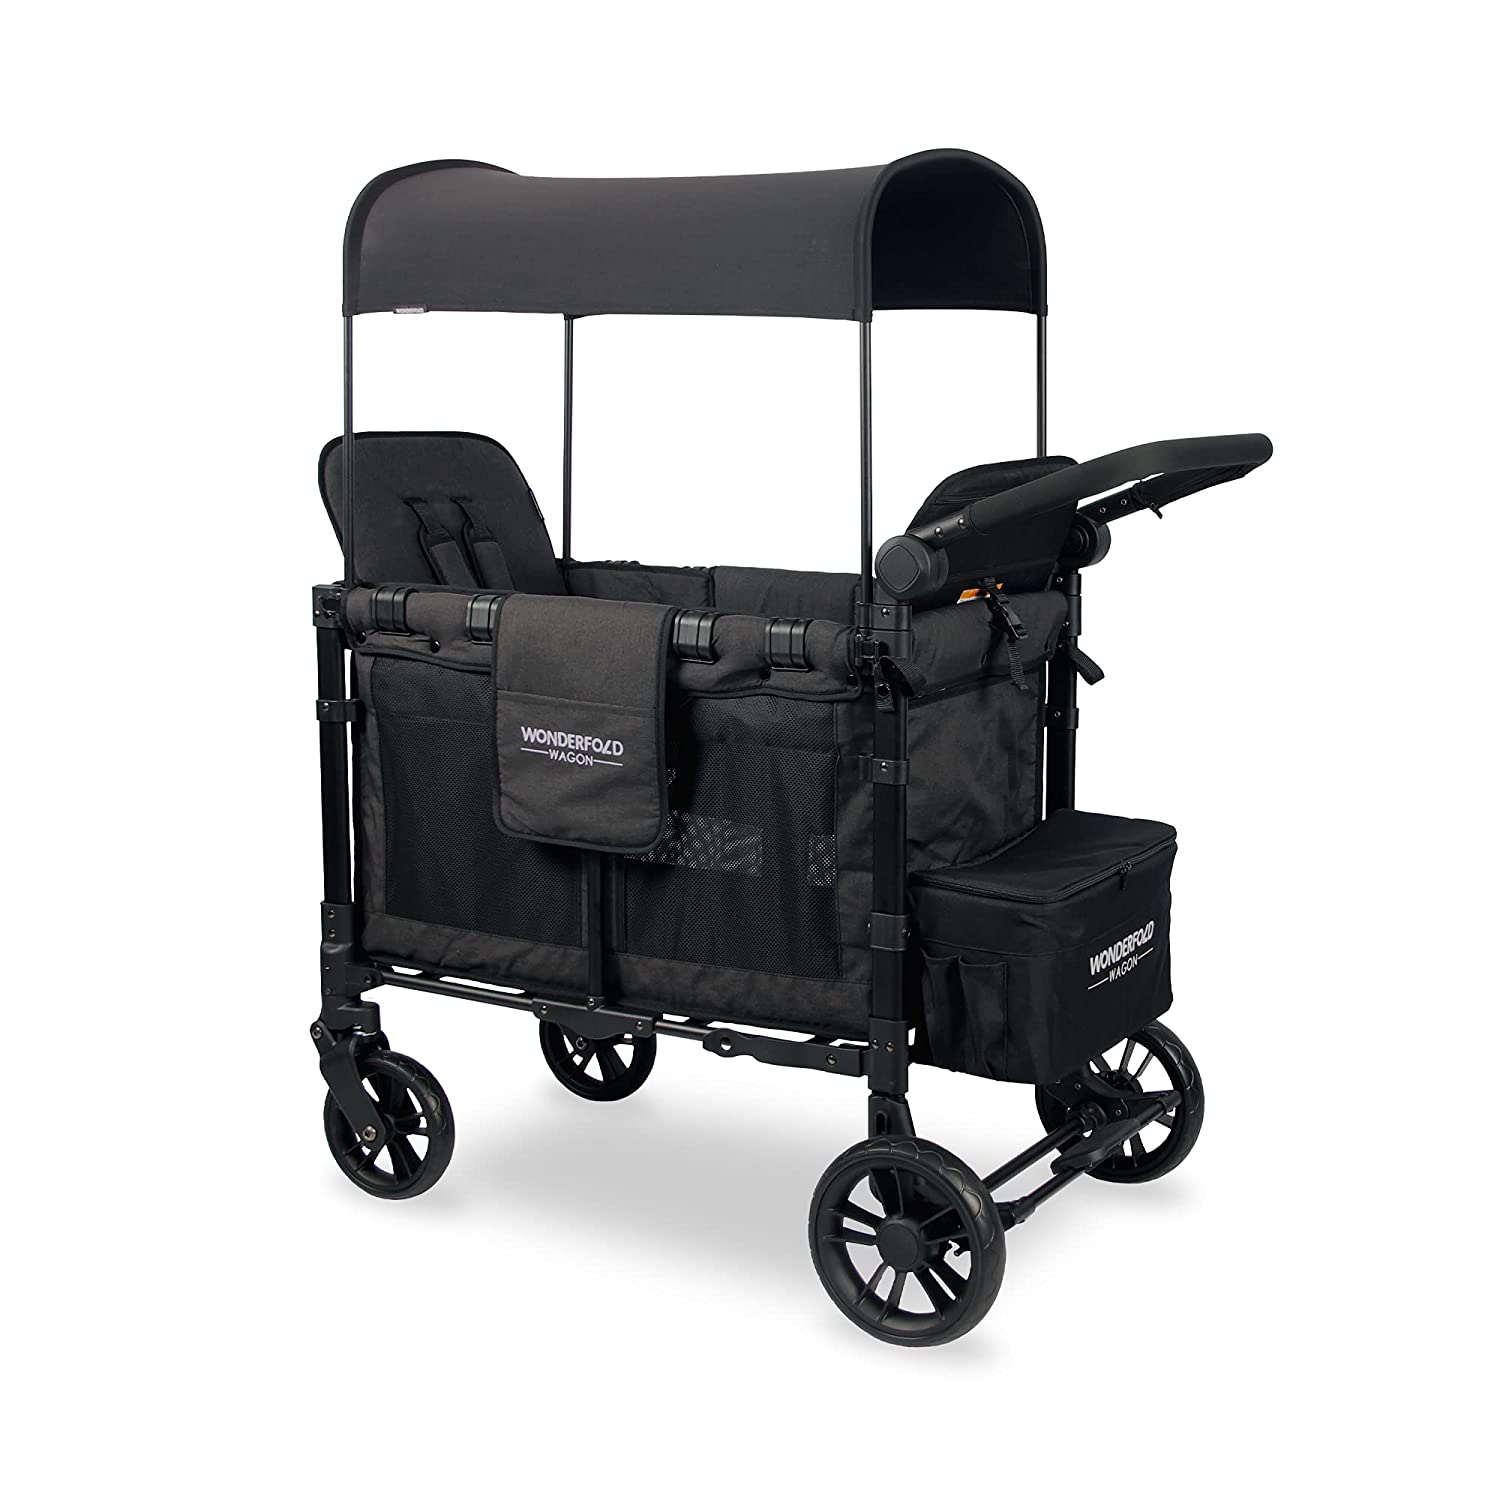 WonderFold W2 Elite Push/Pull 2-Passenger Stroller Wagon Black New